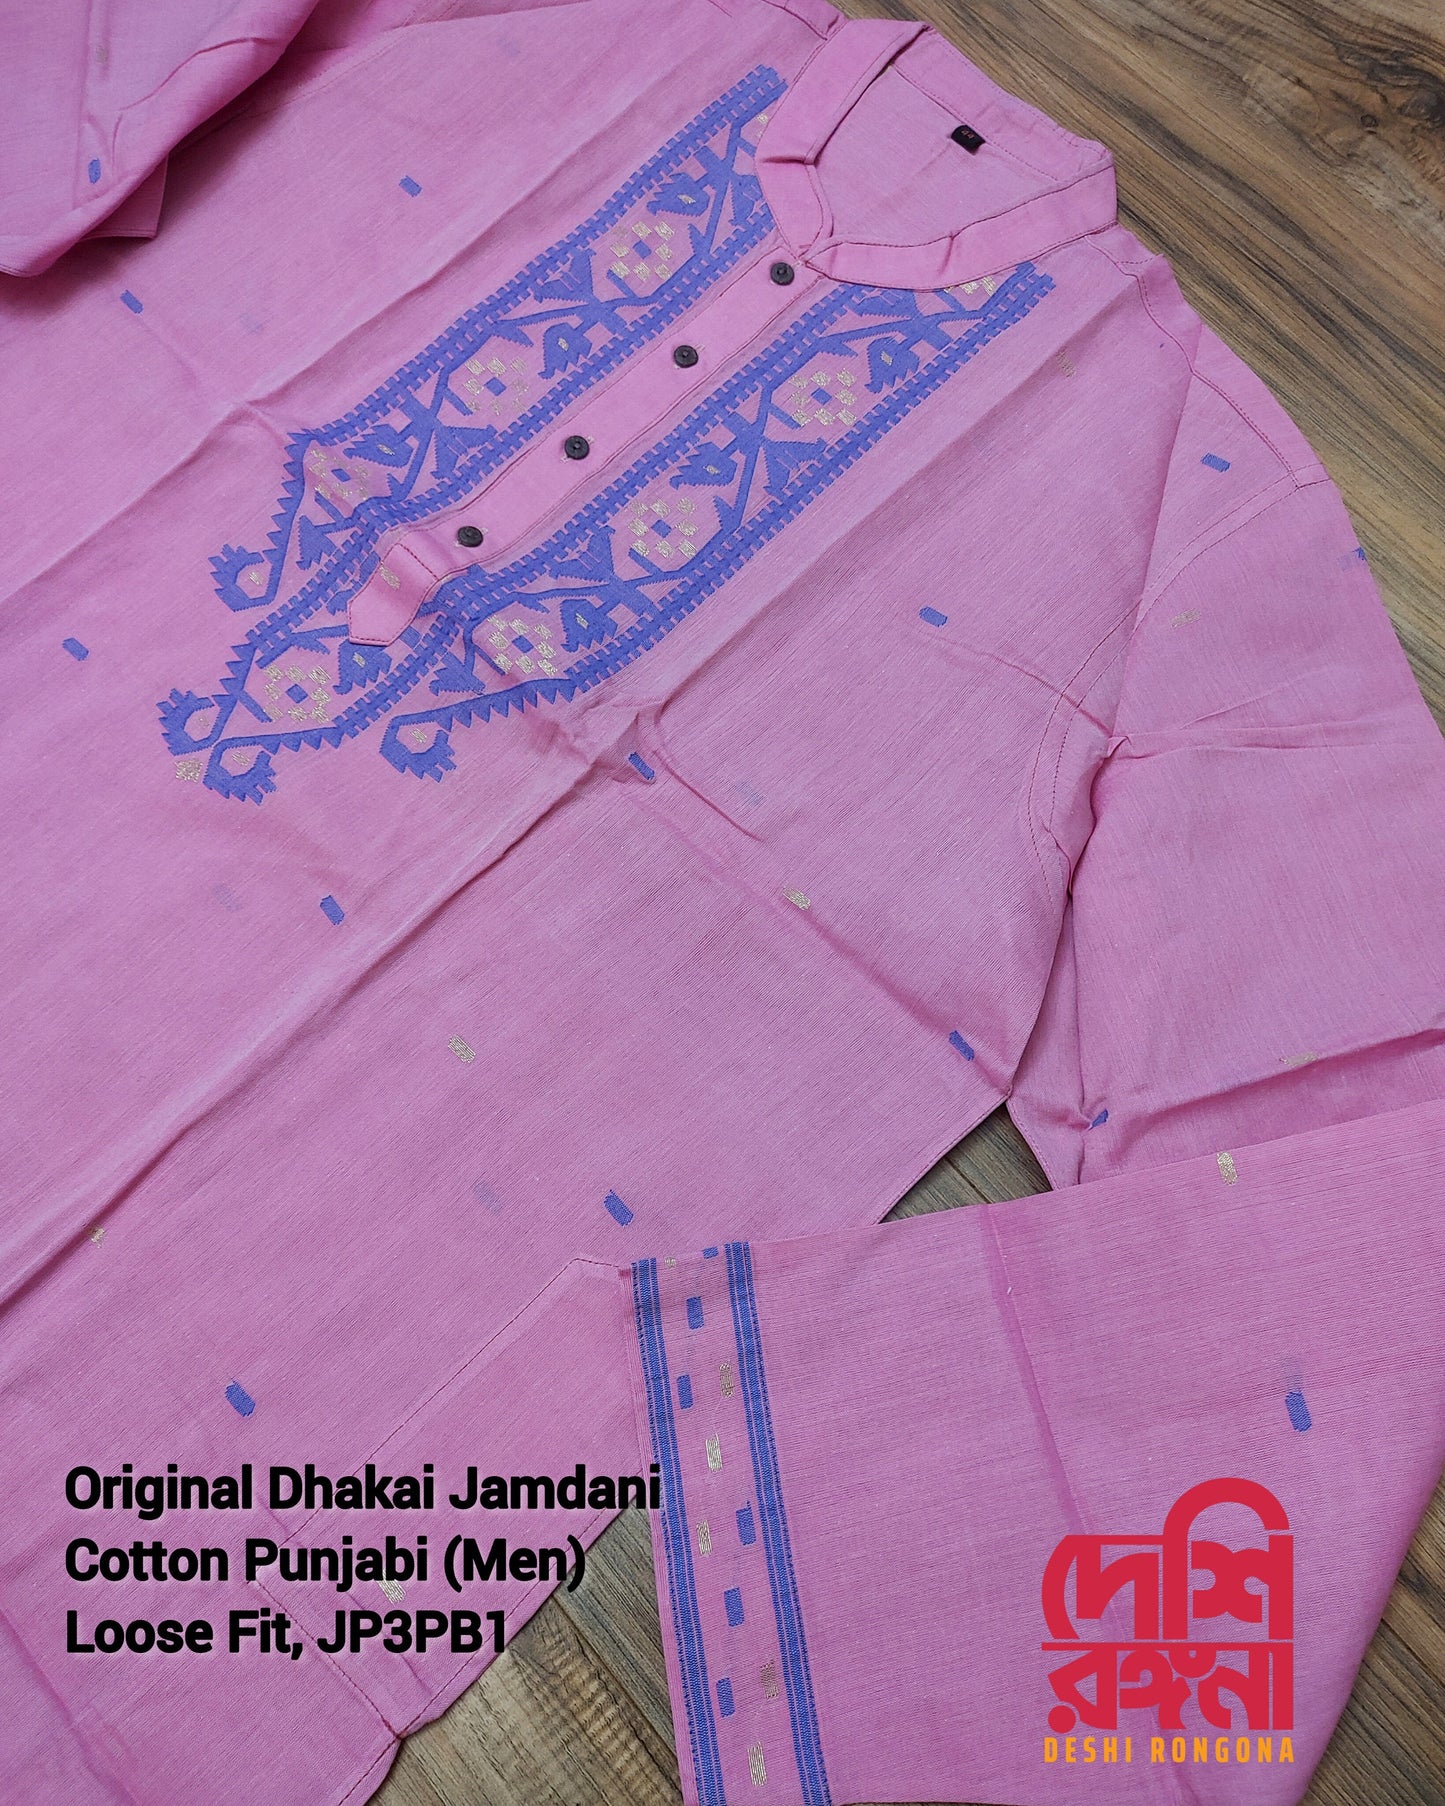 Original Dhakai Jamdani Men Punjabi, Handwoven Pure Cotton, Pink/Blue work, Comfortable, Elegant, Made in Dhaka, Bangladesh, Loose Fitting